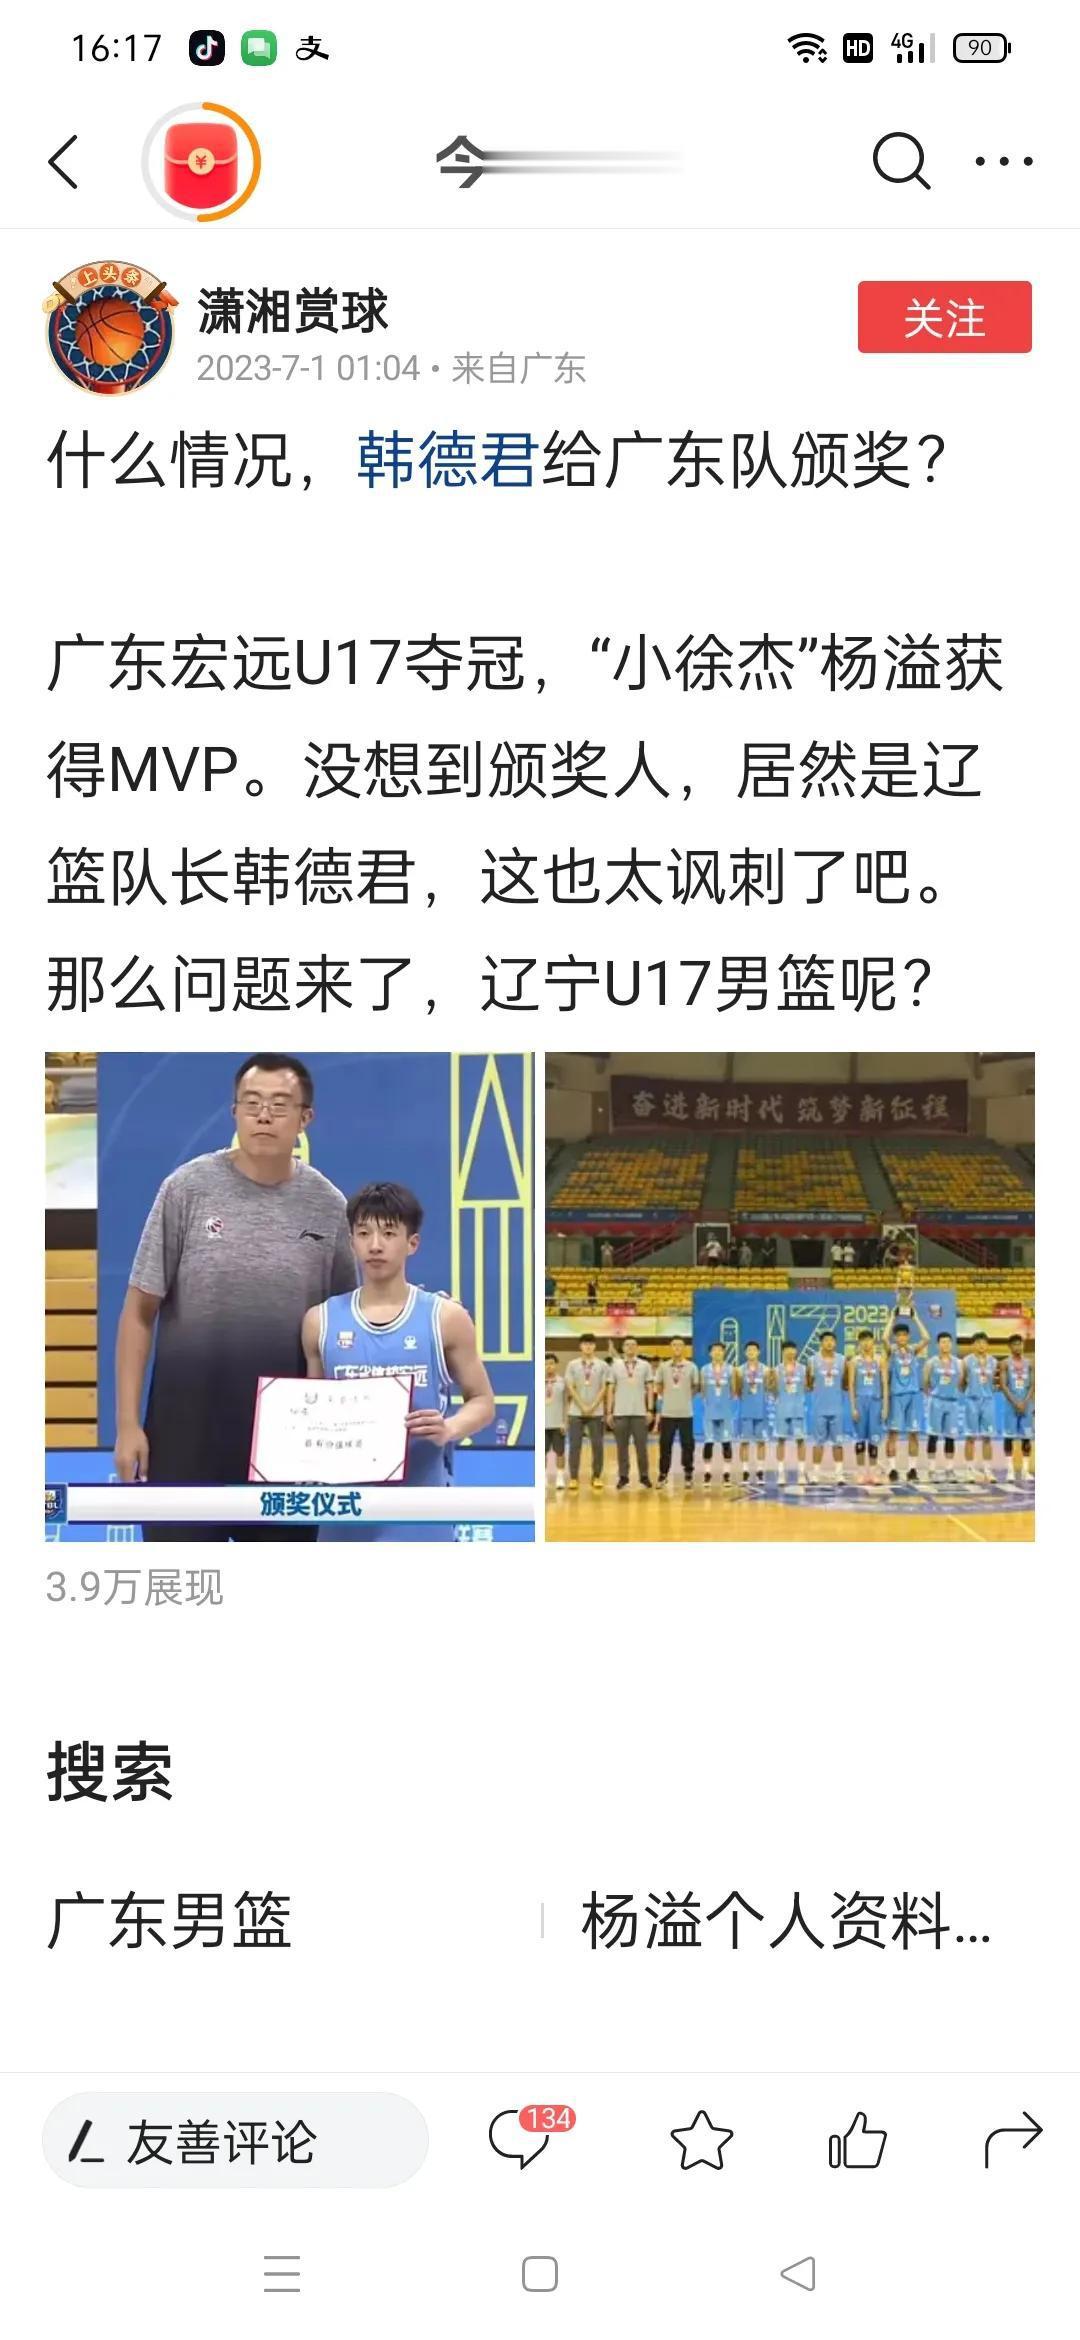 今天看到广东媒体发的帖子，辽宁队队长韩德君给U17广东夺冠，杨溢颁MVp奖，说颁